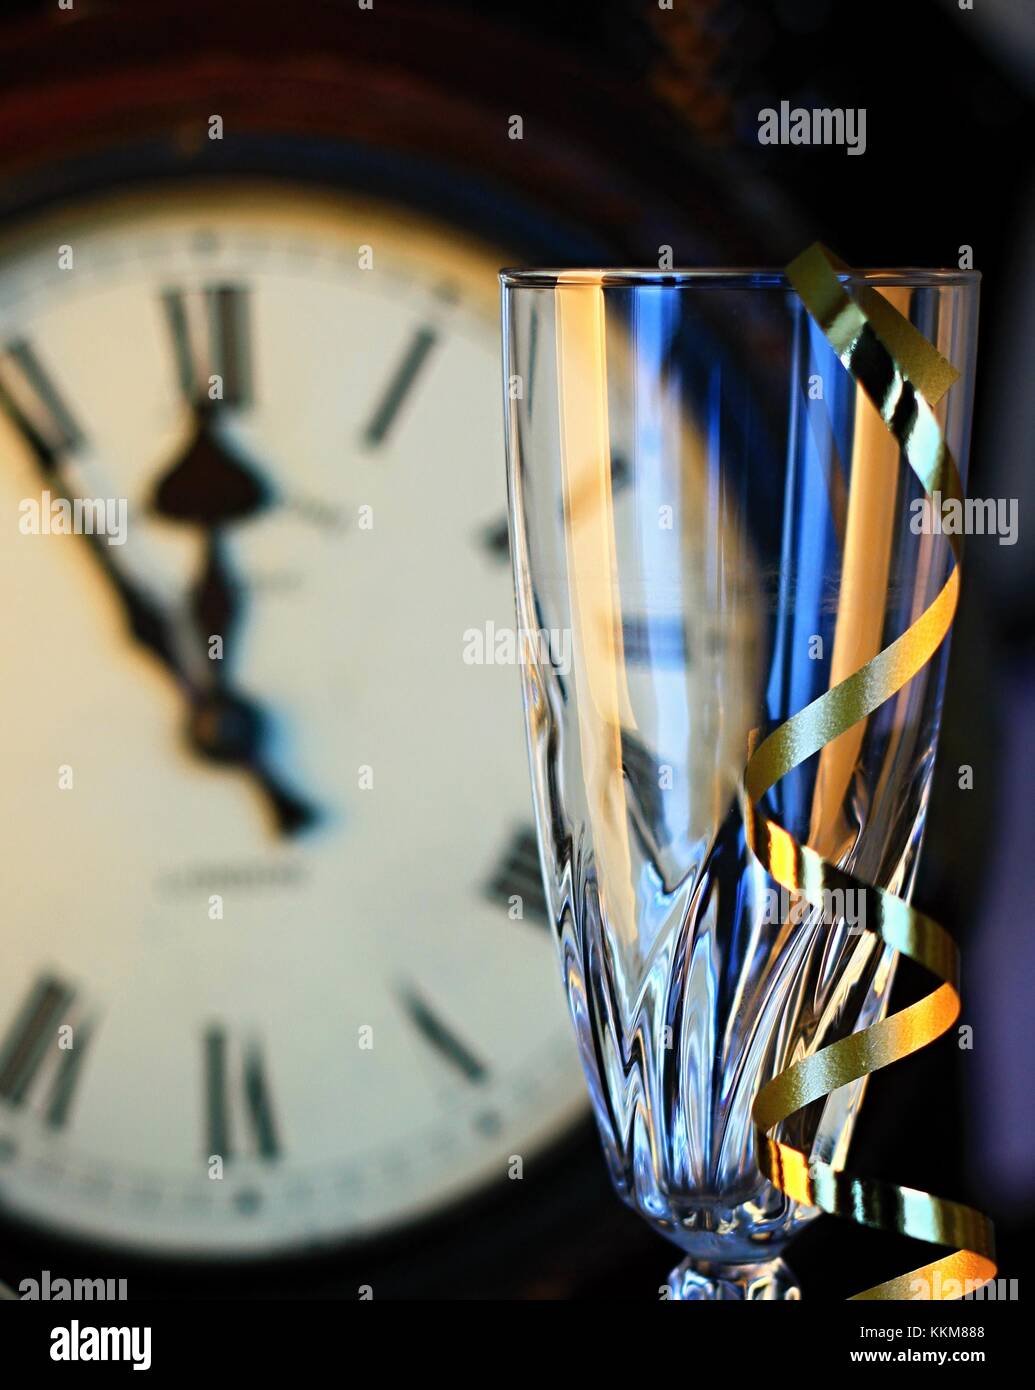 Reloj de año nuevo en el fondo con el vaso vacío y serpentinas Foto de stock